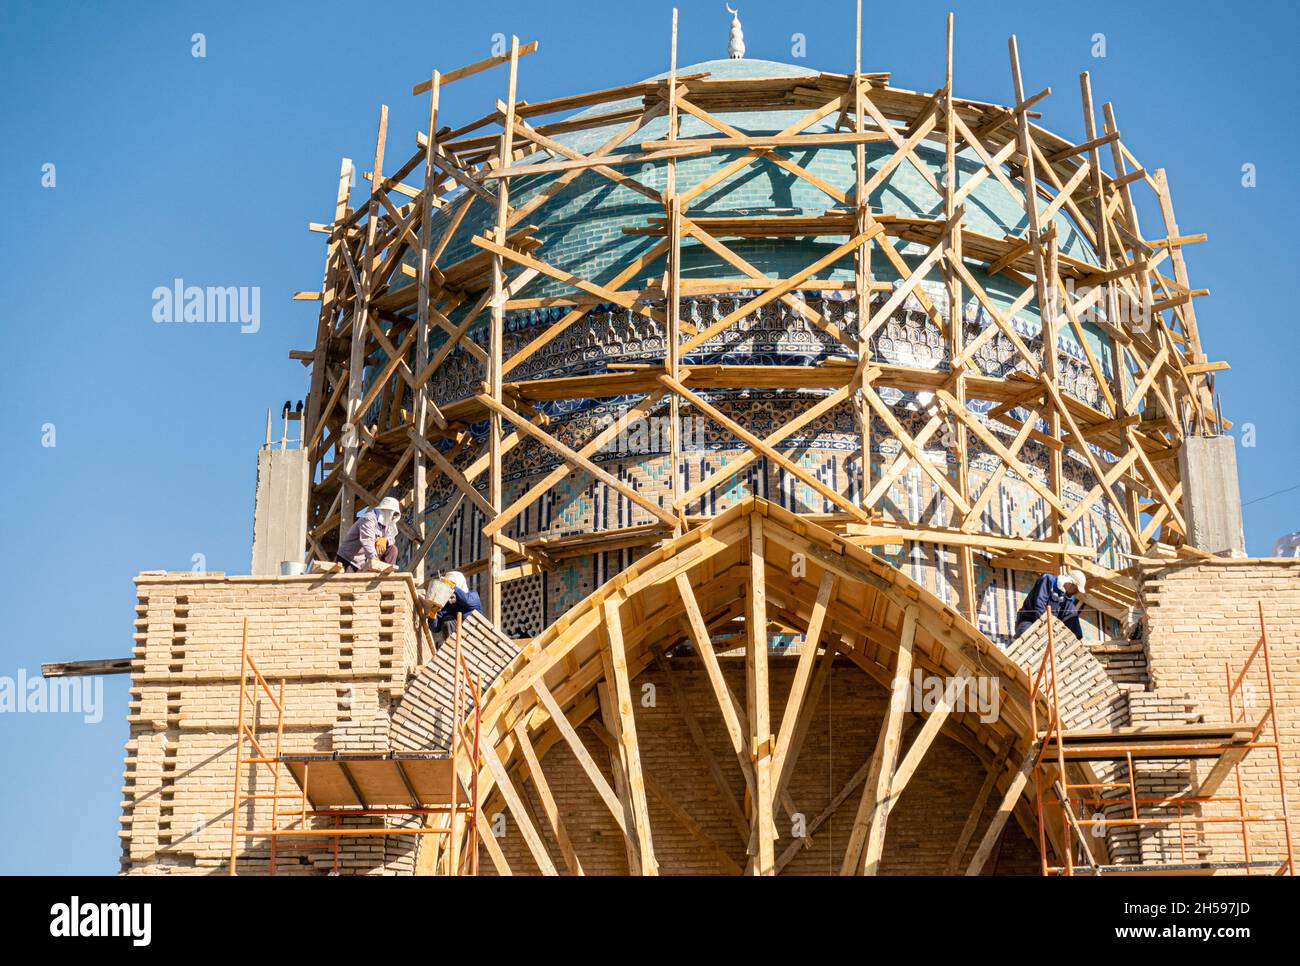 Rekonstruktion der Kuppel des Mausoleums von Khoja Ahmed Yasawi, 14. Jahrhundert, Haupttouristenattraktion in Turkistan, Kasachstan, Zentralasien Stockfoto